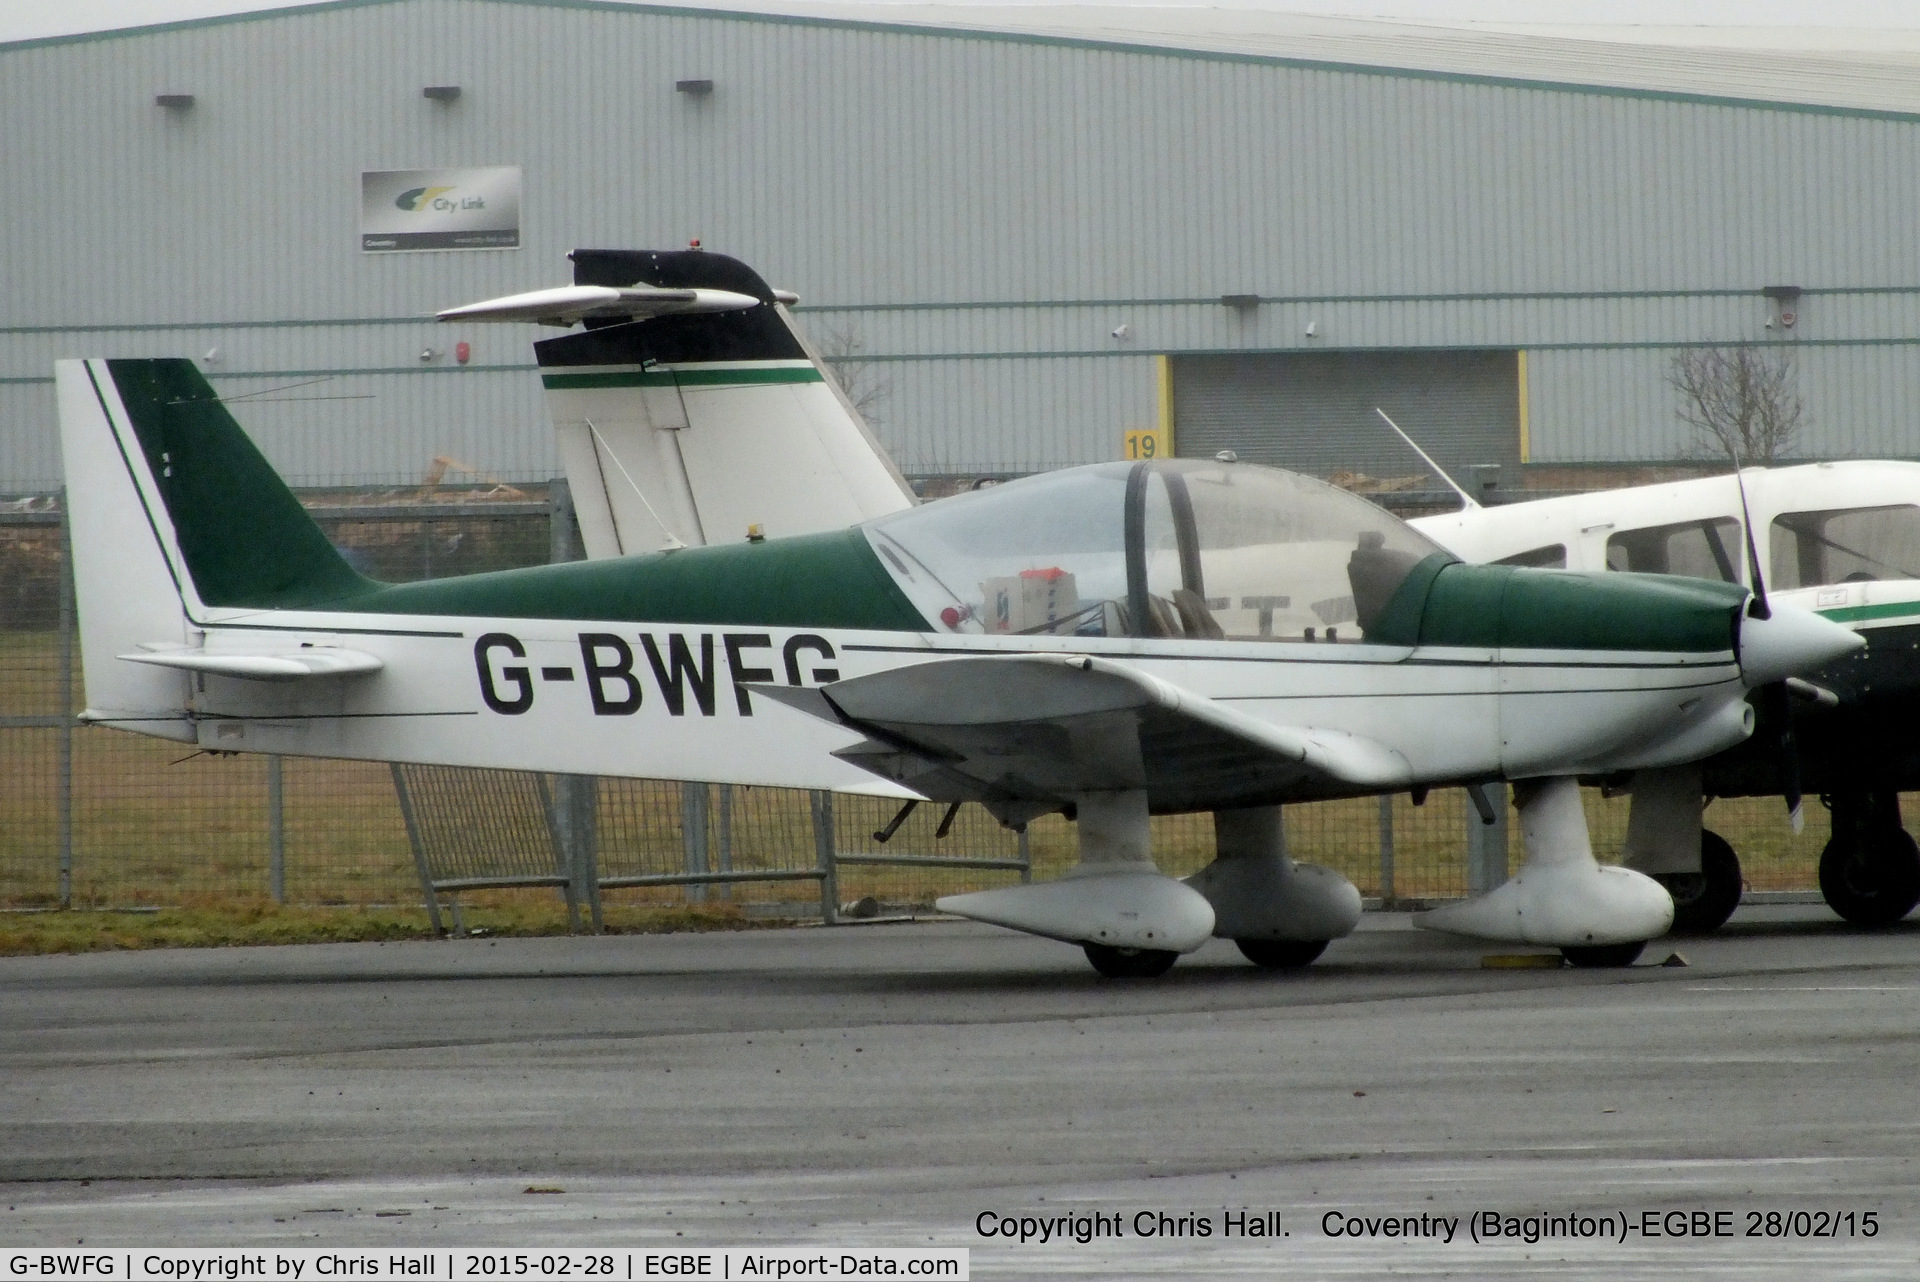 G-BWFG, 1995 Robin HR-200-100 Club C/N 293, RVL Aviation Ltd